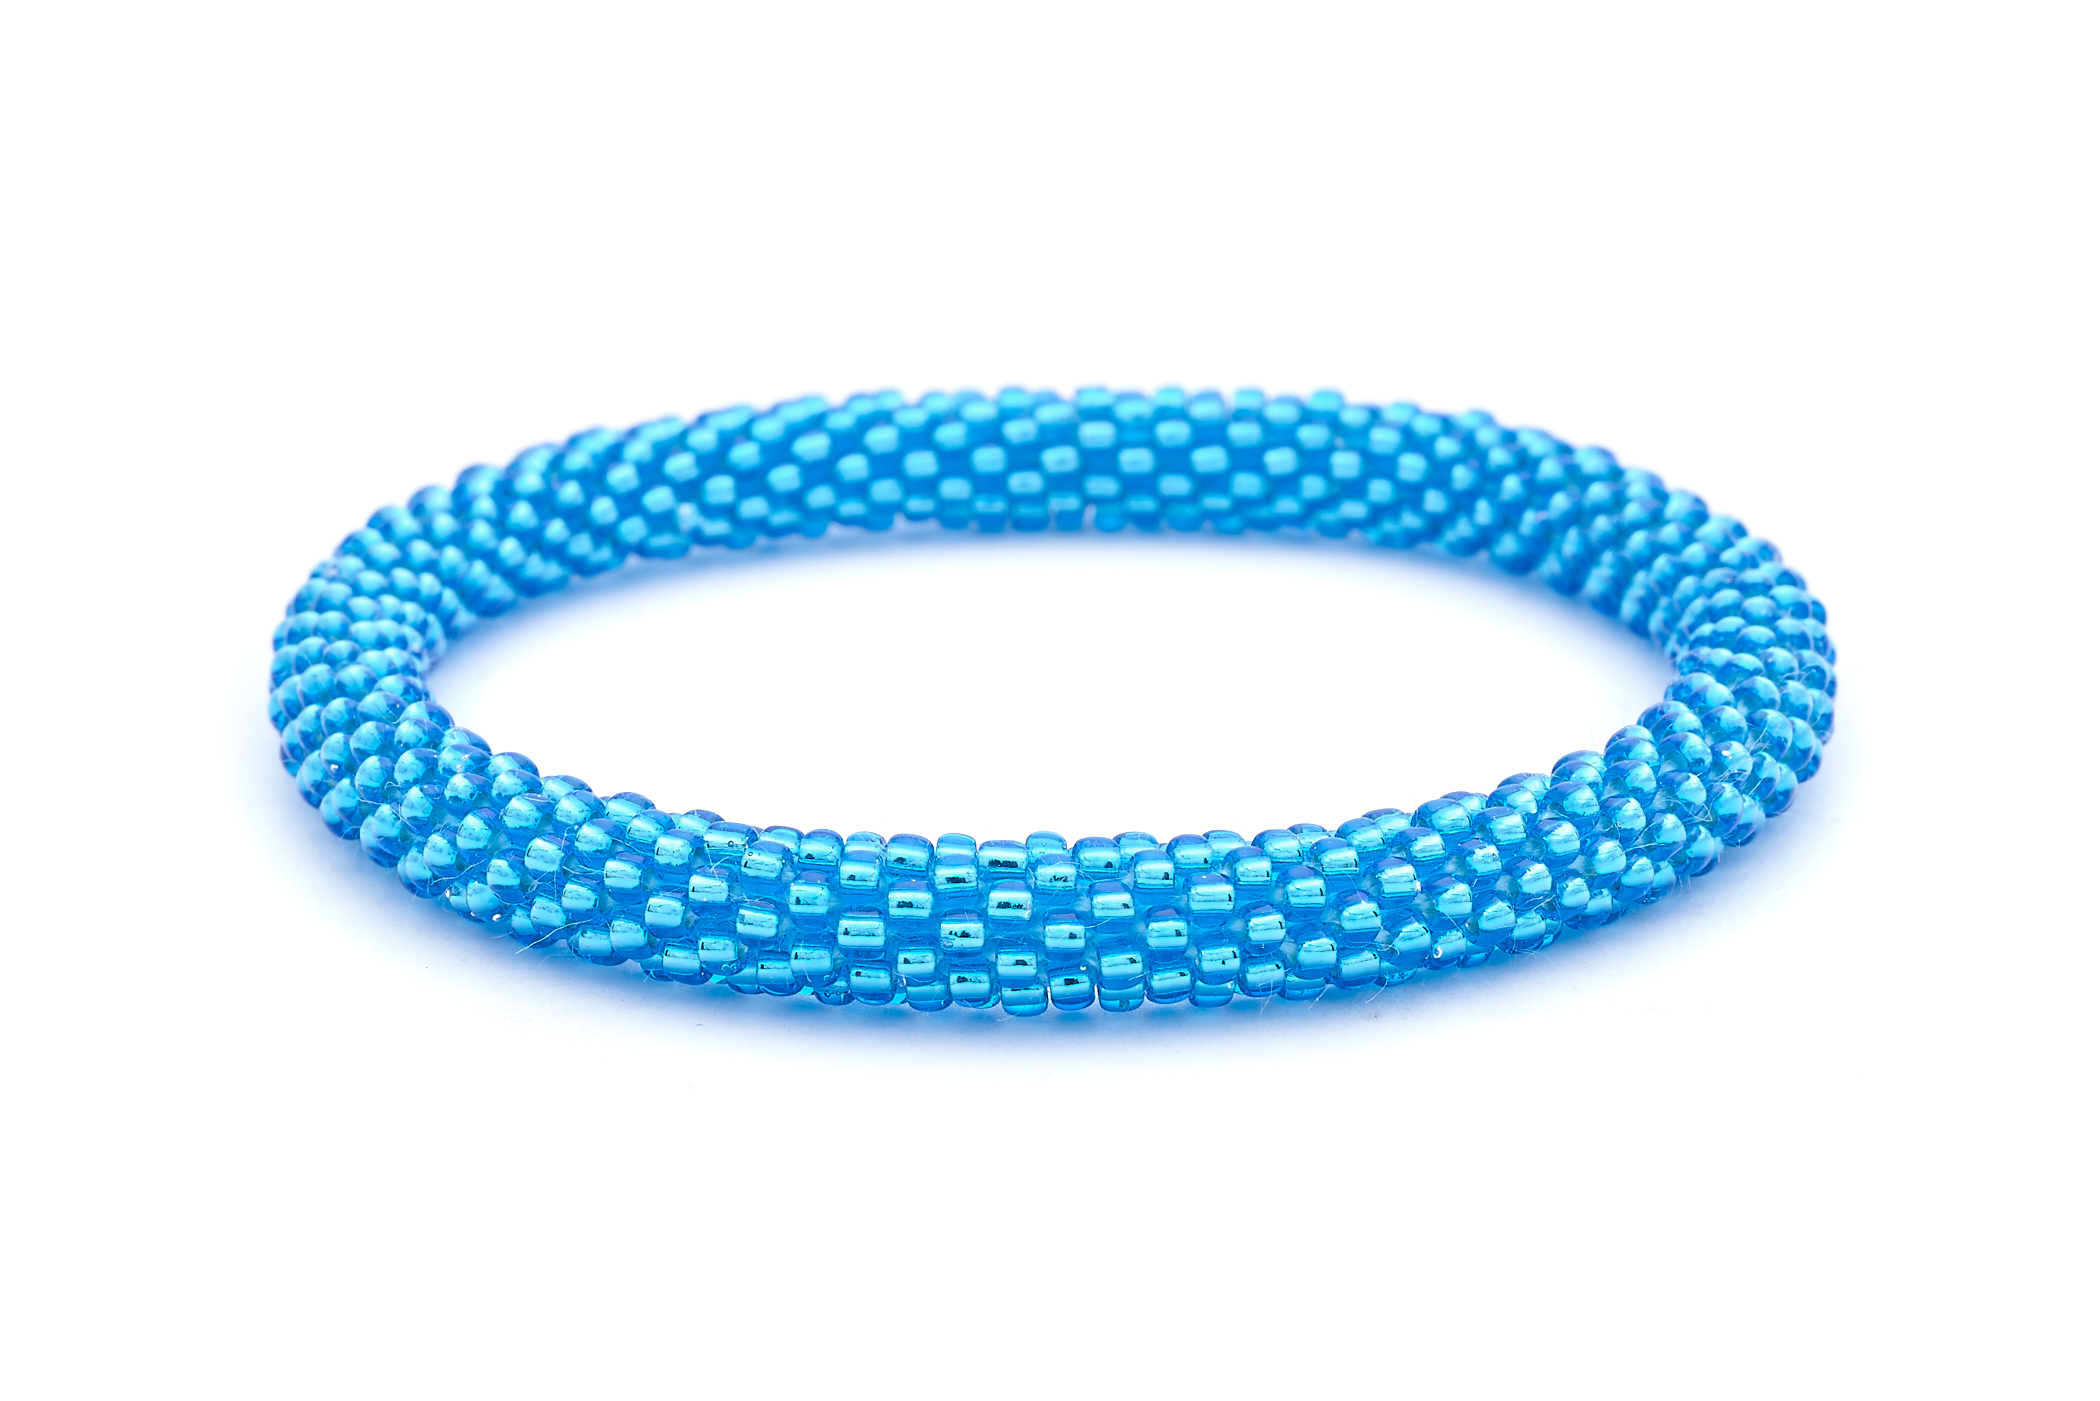 Sashka Co. Extended 8" Bracelet Metallic Blue Bright Metallic Blue Bracelet - Extended 8"